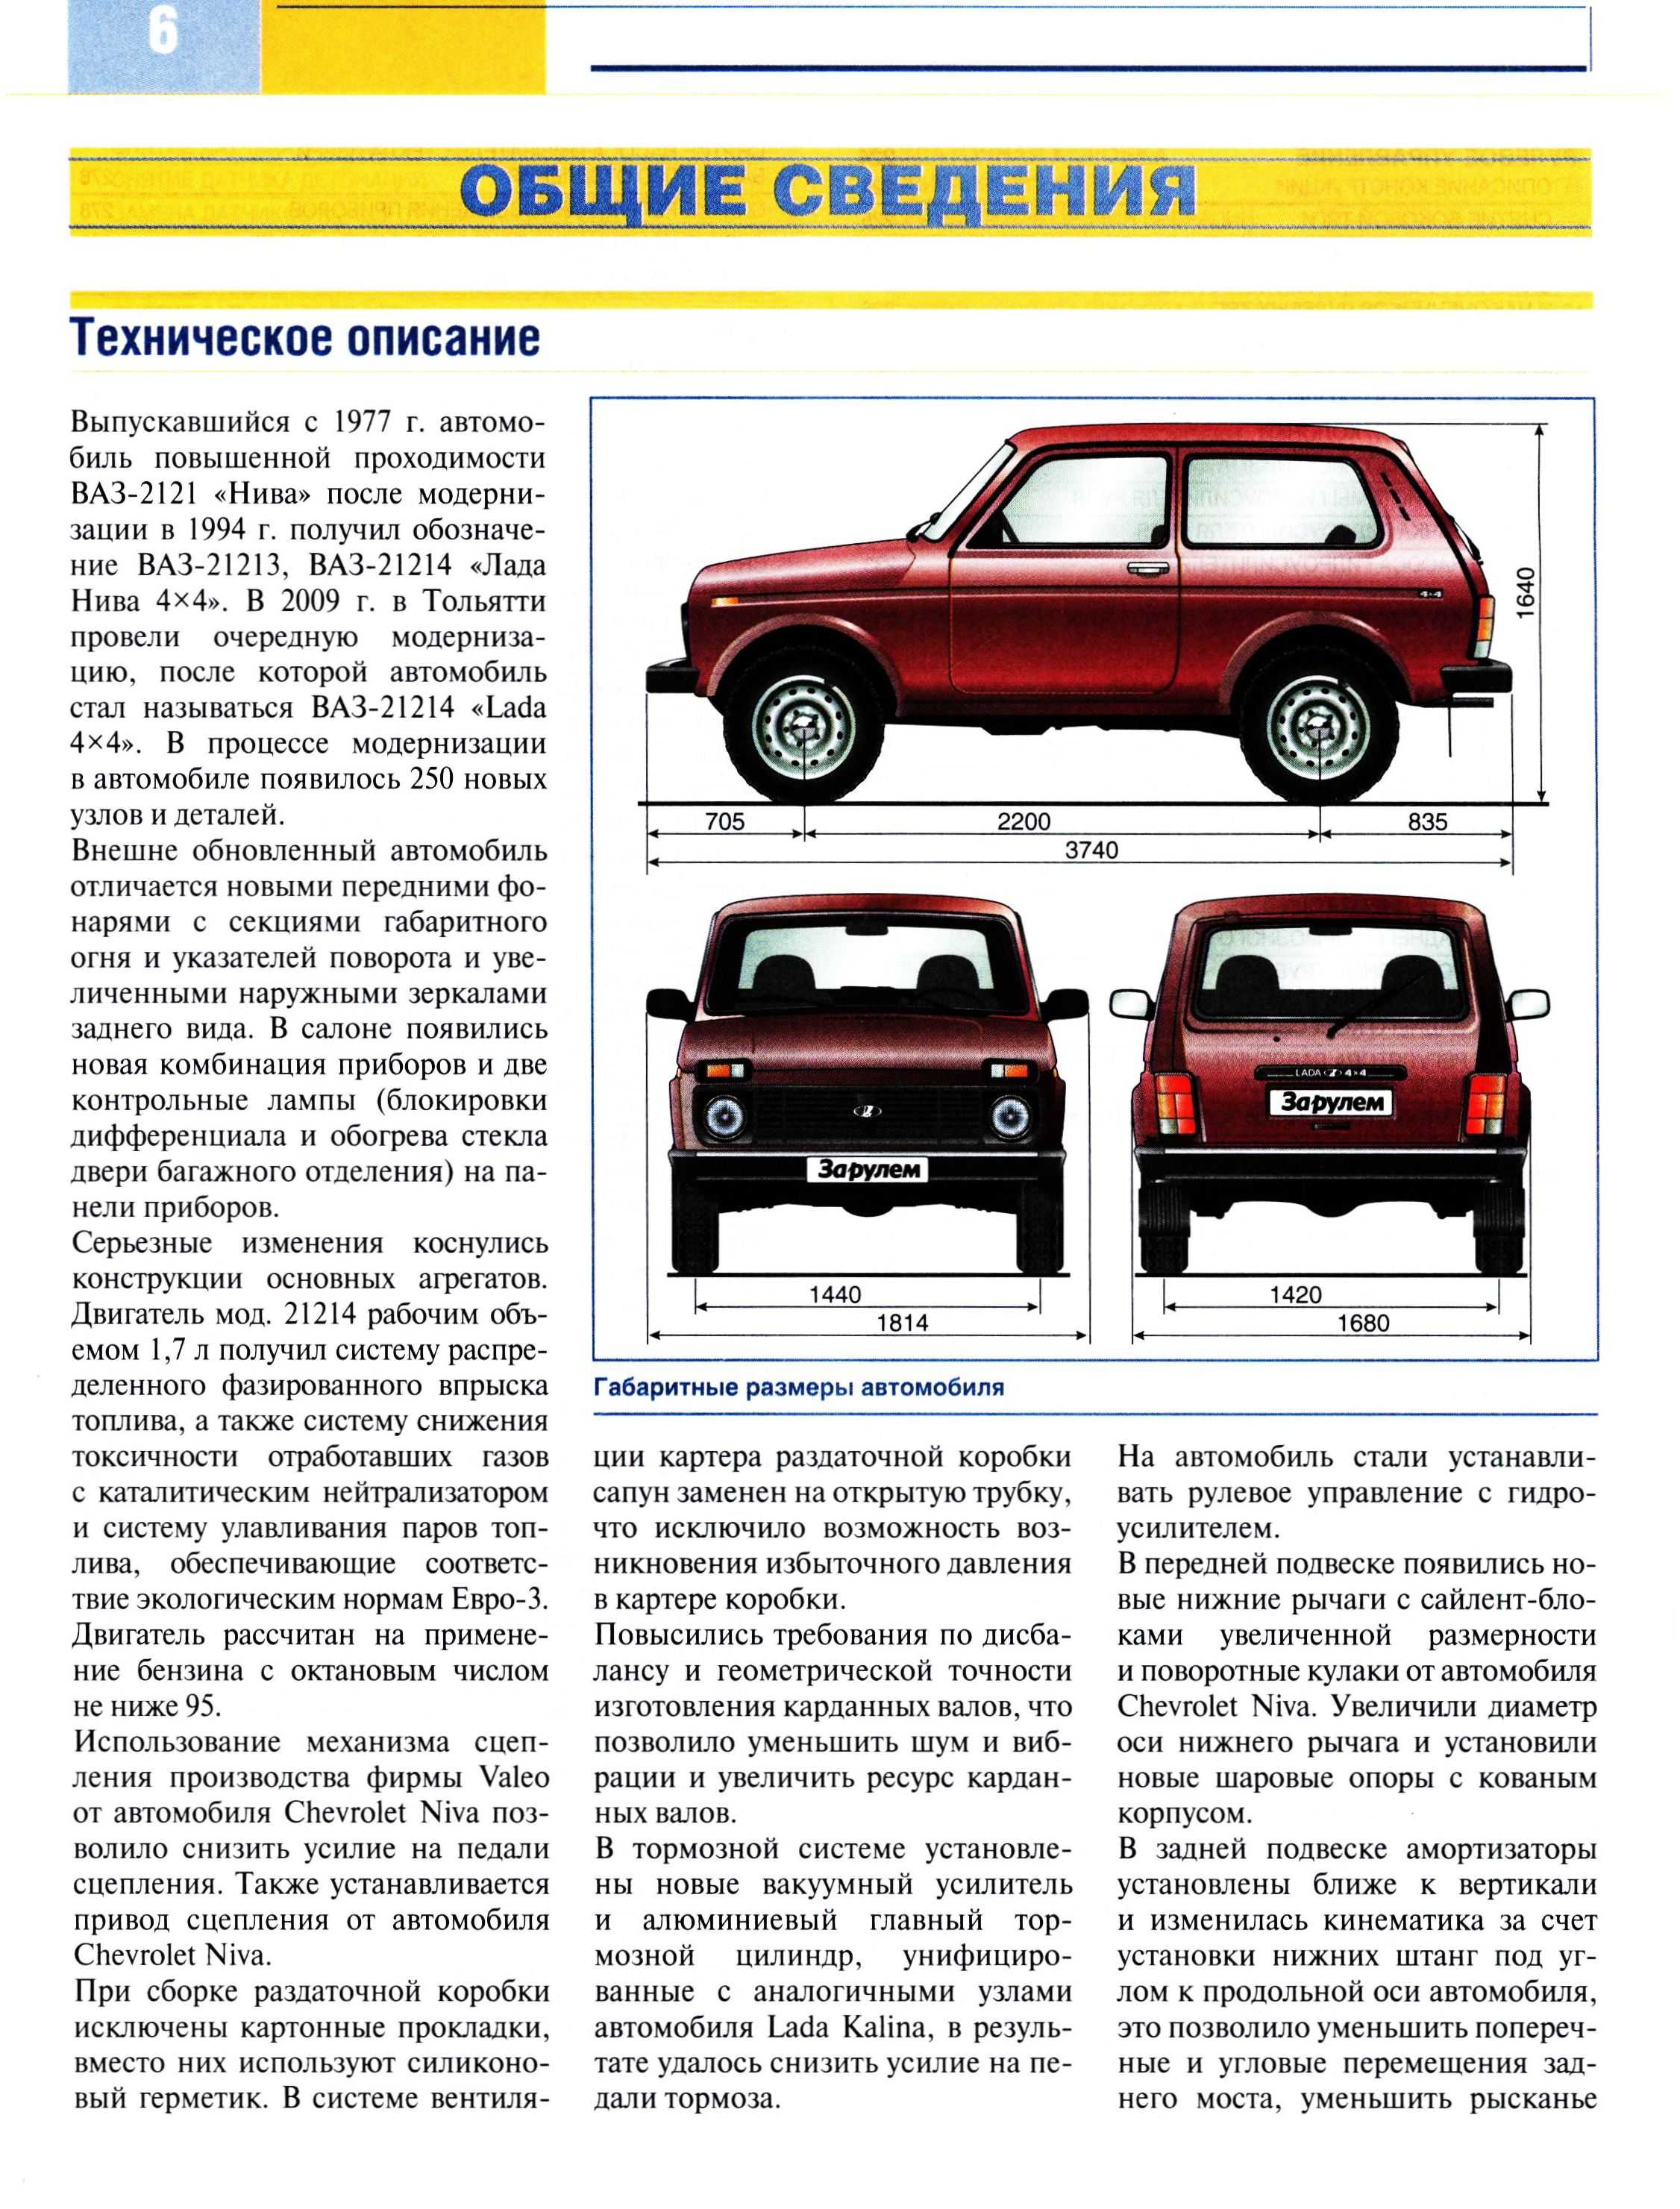 Ваз-21310 niva: описание, технические характеристики, отзывы :: syl.ru